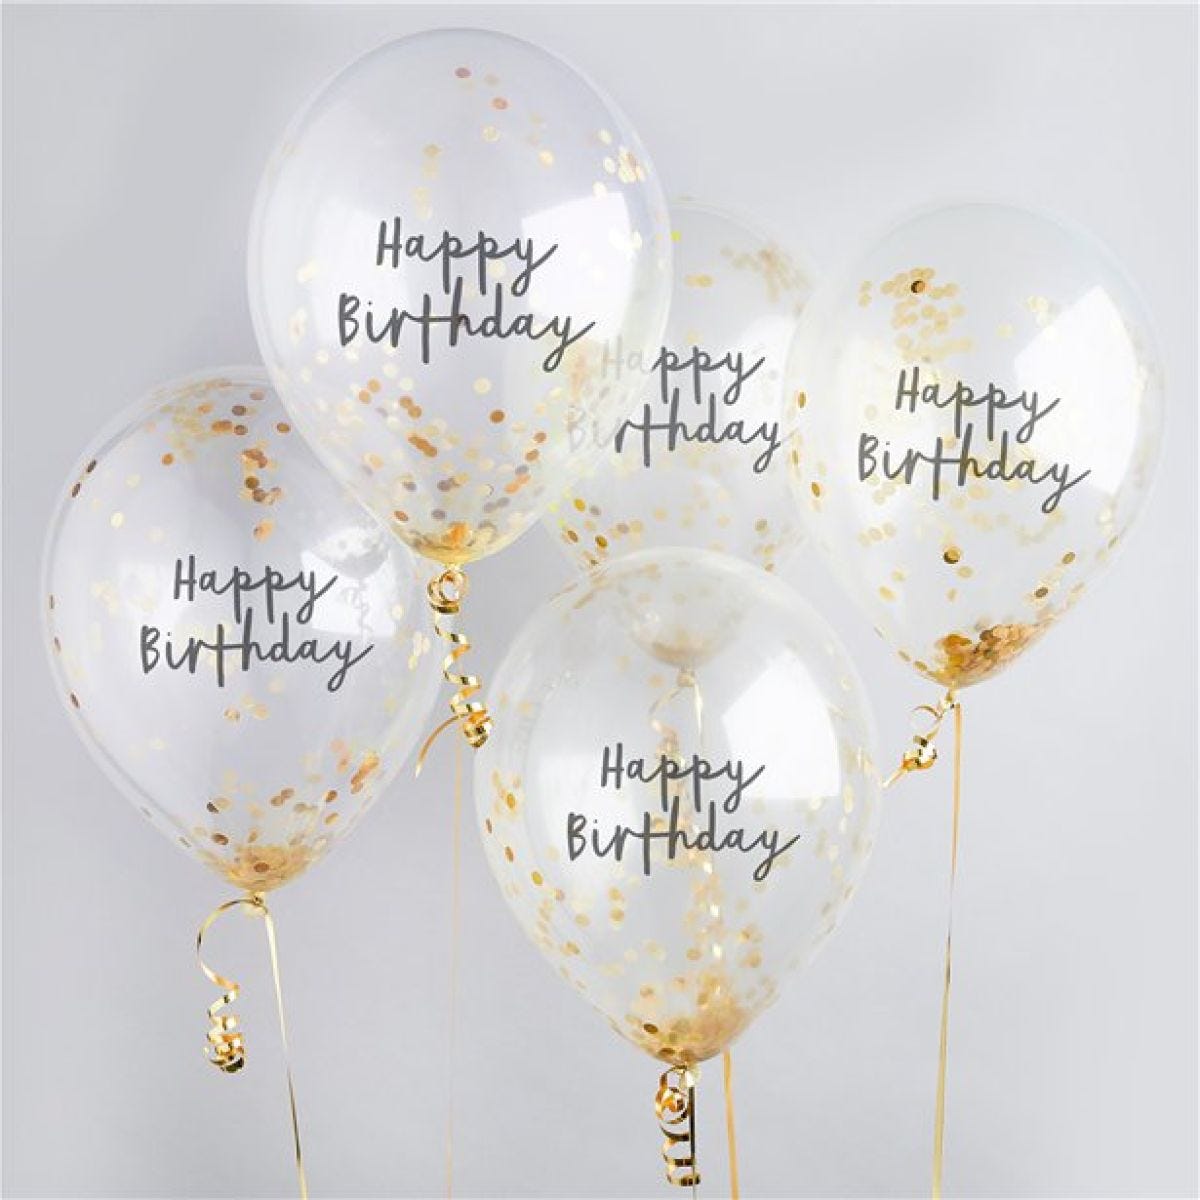 H.Bday Gold Conf Balloons 5pk (Balloons)